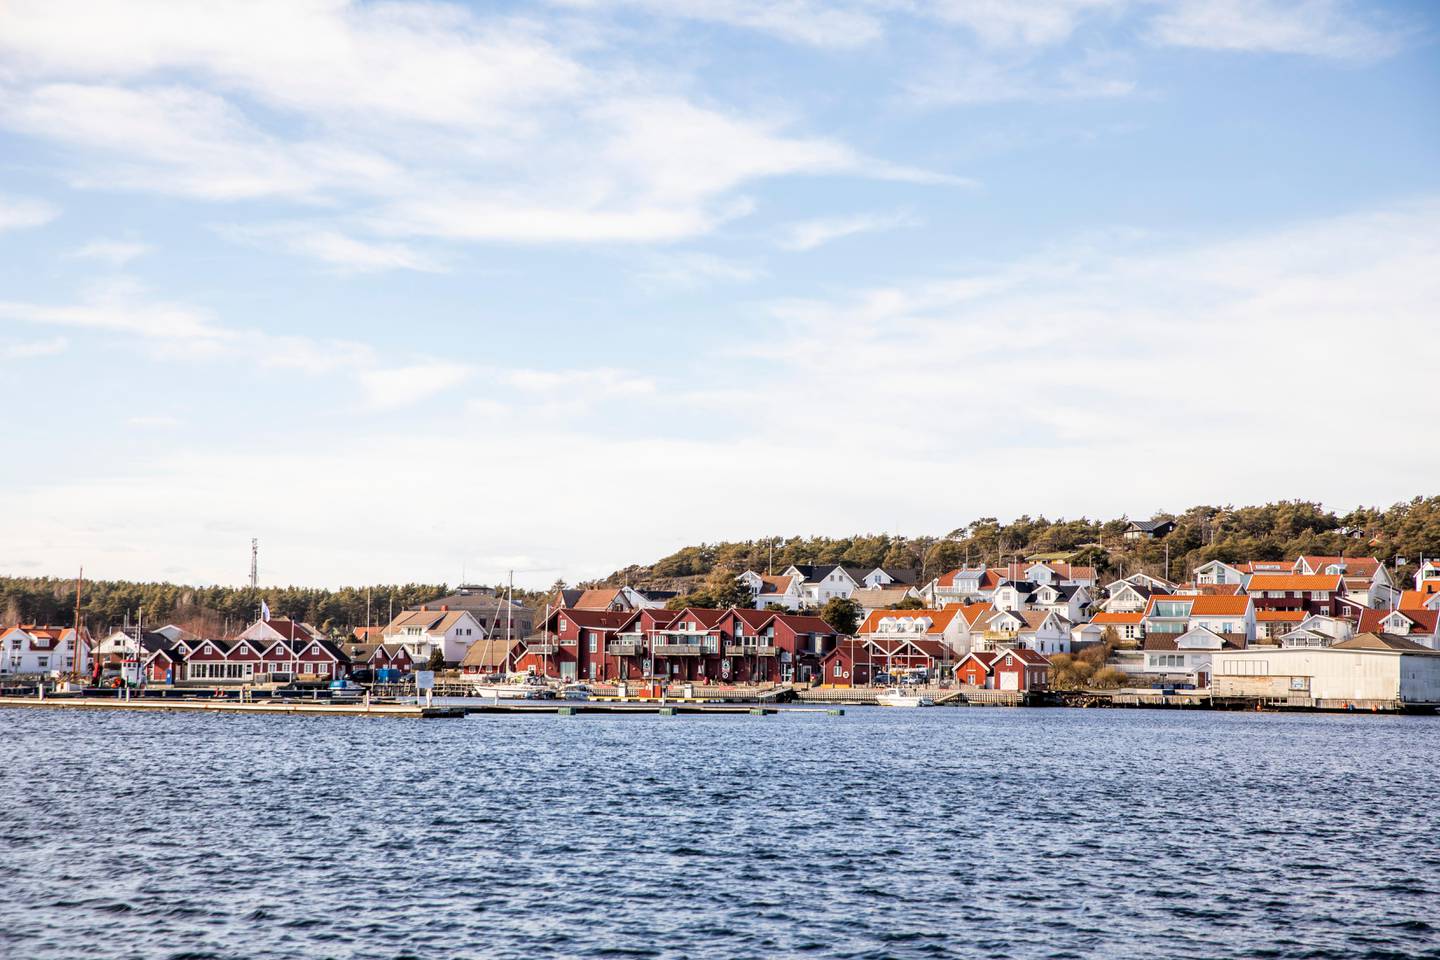 Skjærhalden 20200331. 
Hvaler kommune har sendt ut SMS-varsling om at de stenger gjestehavner, bobilplasser og campingplasser som følge av Korona-situasjonen i Norge.
Foto: Tore Meek / NTB scanpix